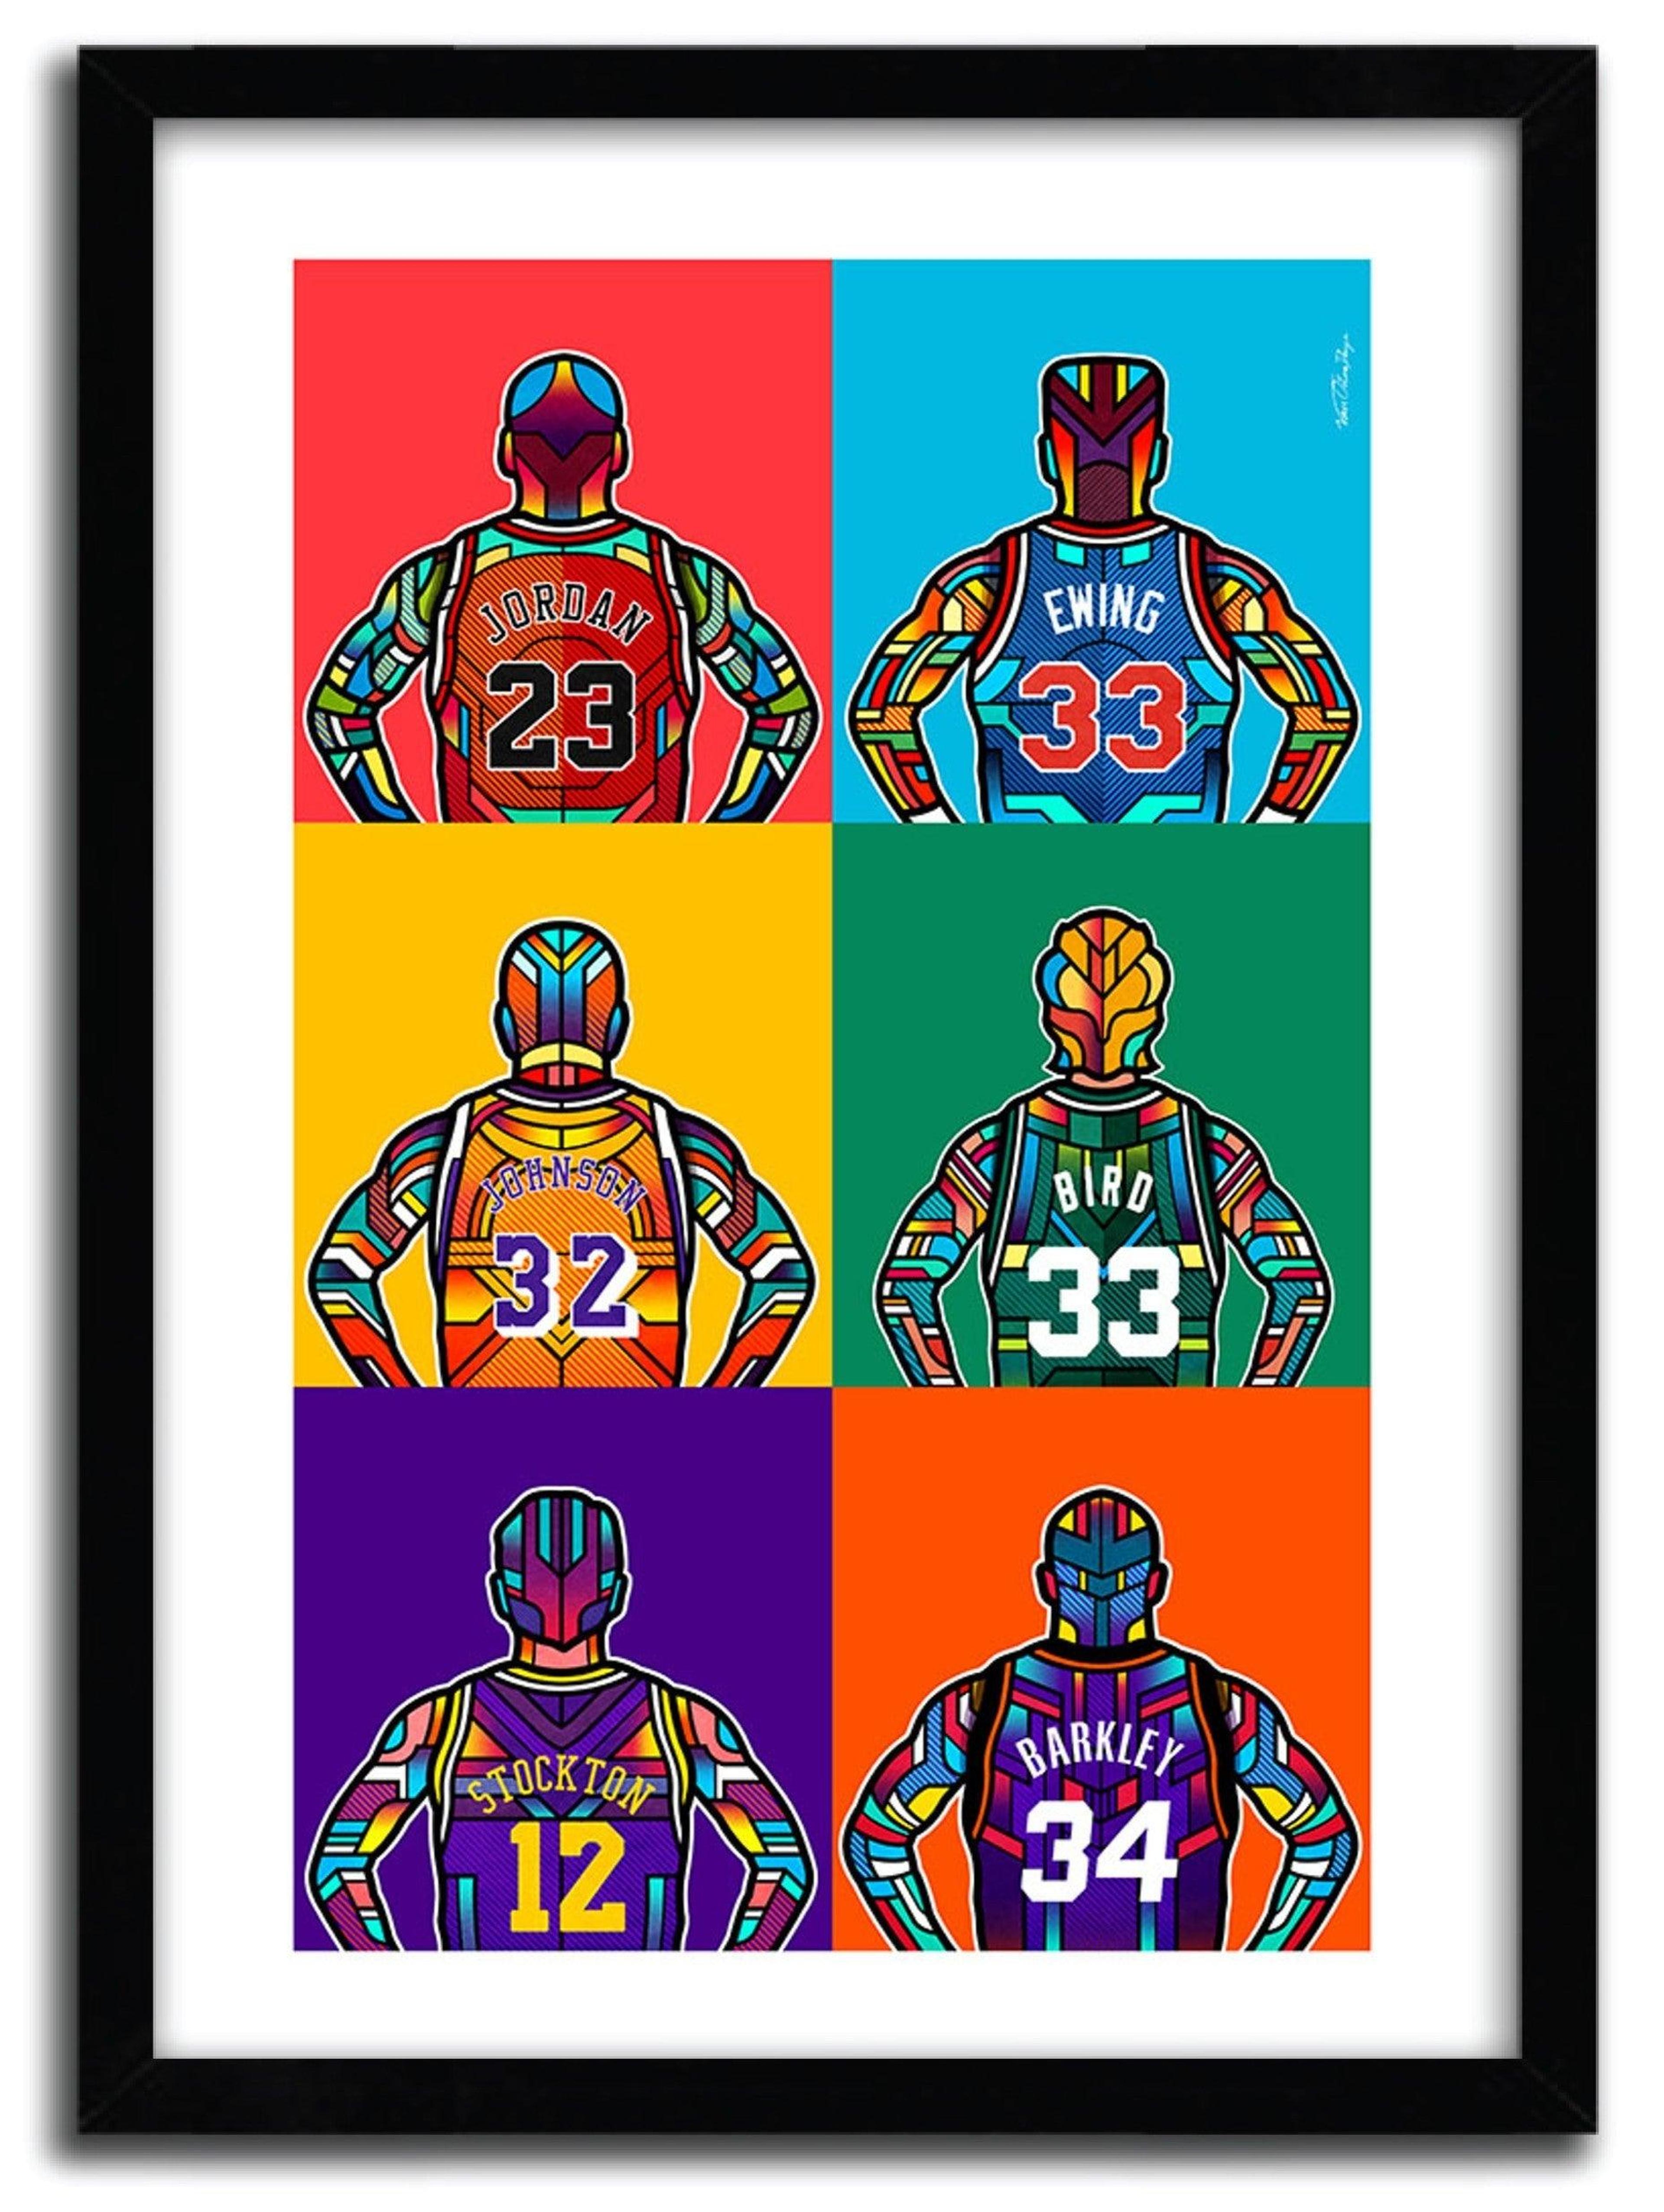 NBA LEGENDS by VAN ORTON